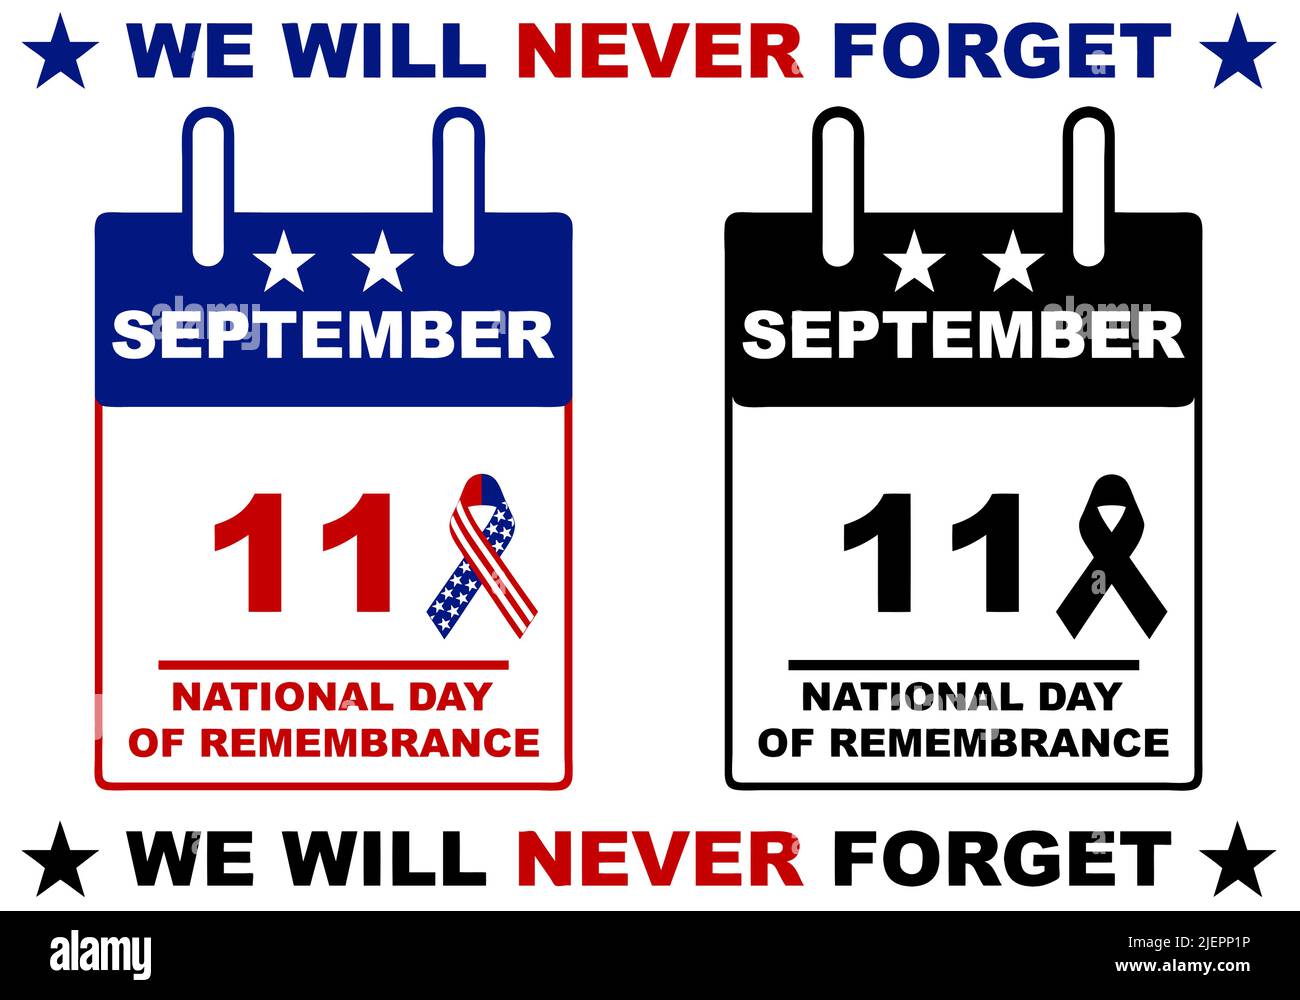 Kalender des Nationalen Gedenktages 9/11 auf Weiß isoliert. 11. September 2001 Stock Vektor